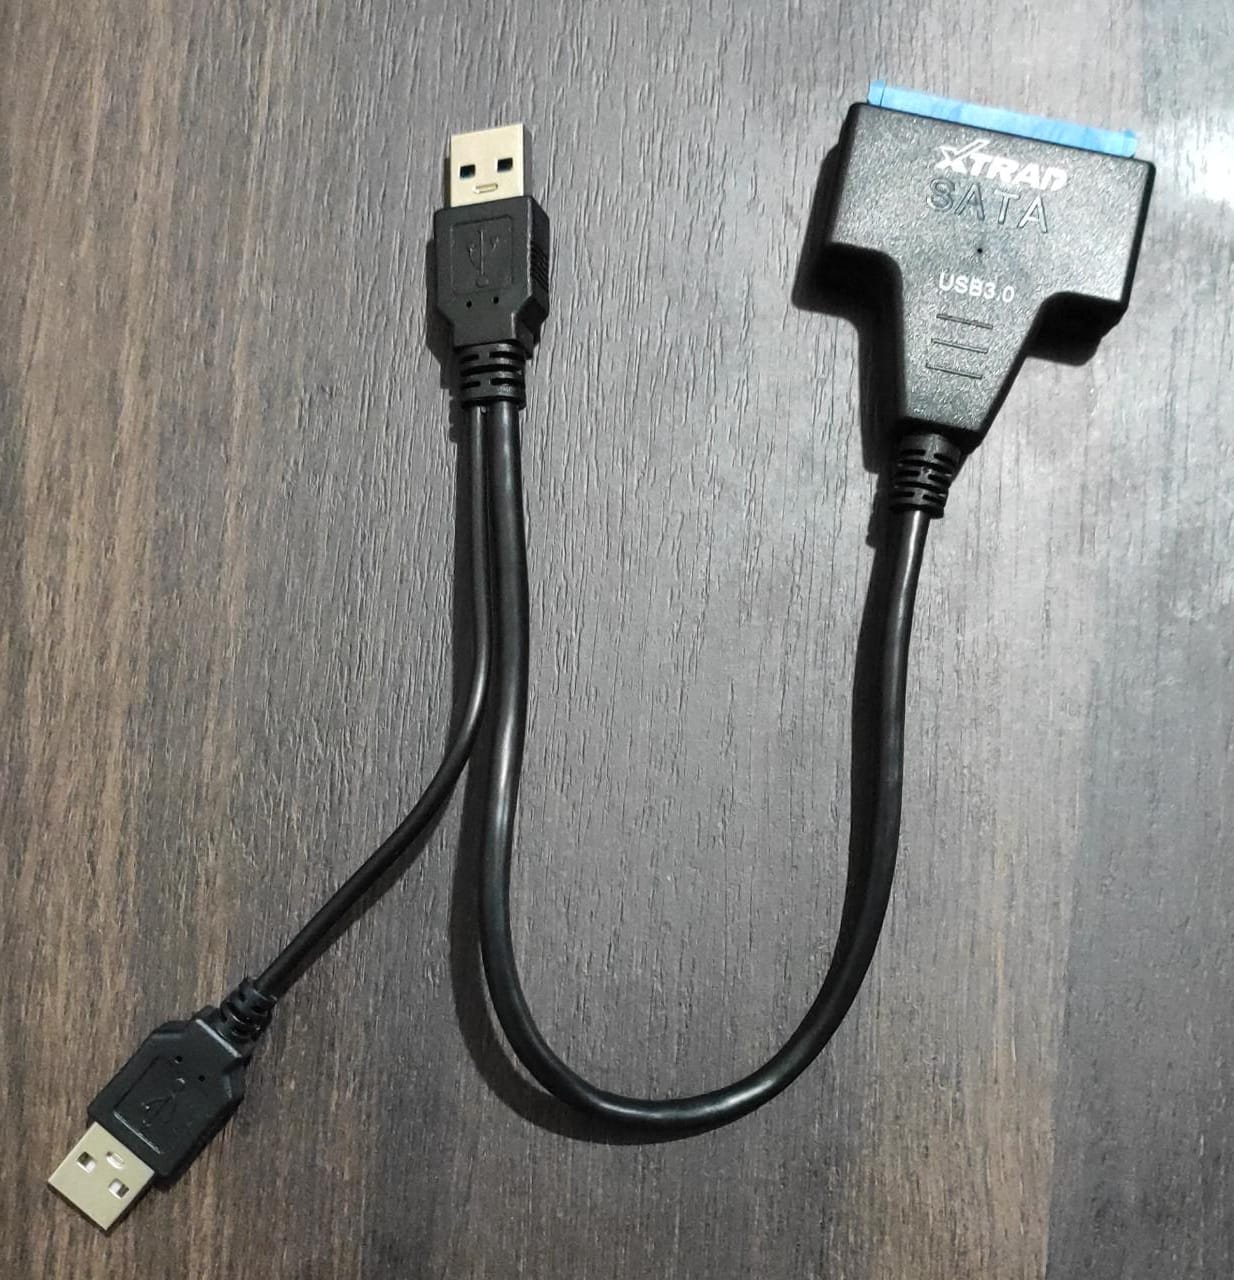 Conversor SATA-USB Montado